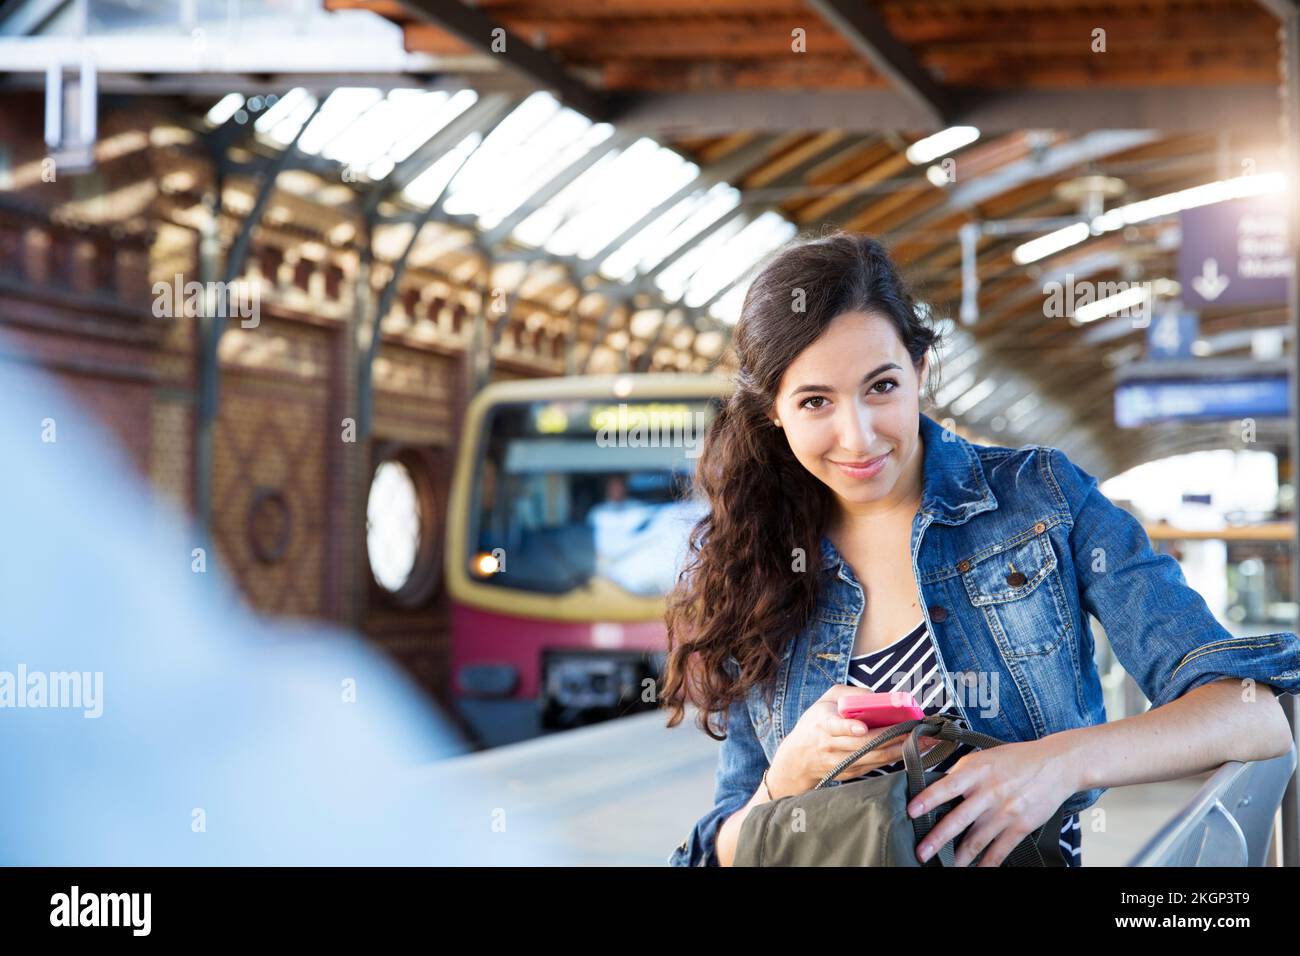 Deutschland, Berlin, Porträt der jungen weiblichen Touristen auf Städtereise Stockfoto